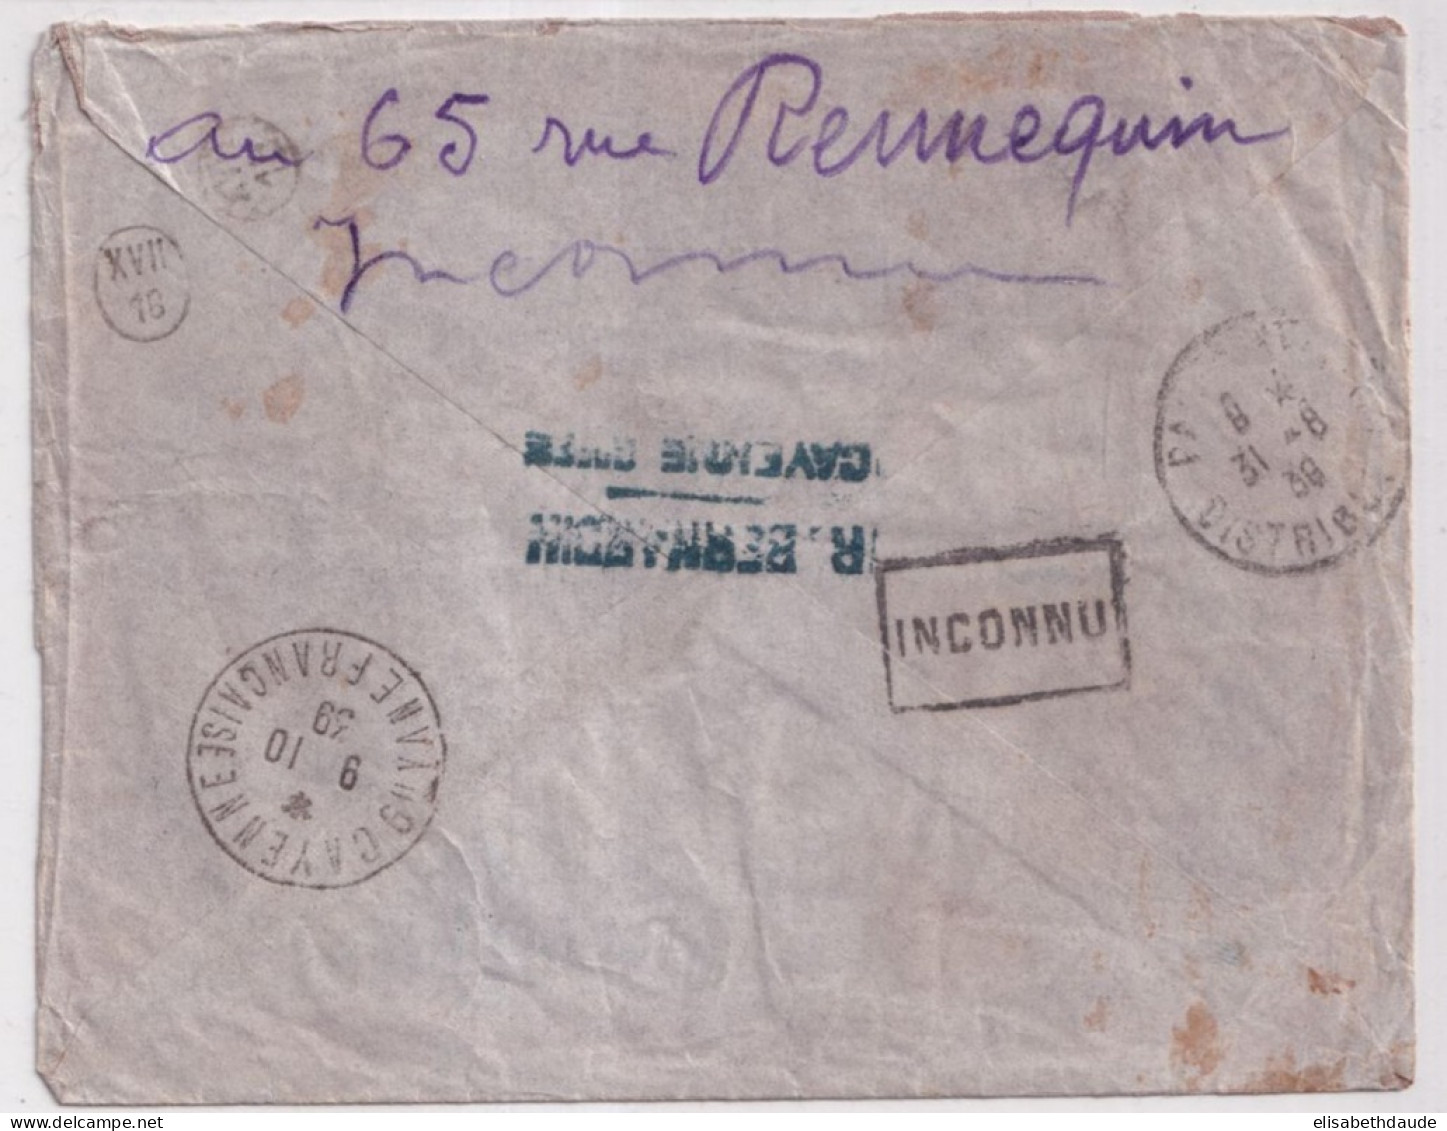 GUYANE - 1939 - RARE COMBINAISON POSTE AERIENNE Sur LETTRE RECOMMANDEE De CAYENNE => PARIS "RETOUR A L'ENVOYEUR" - Cartas & Documentos